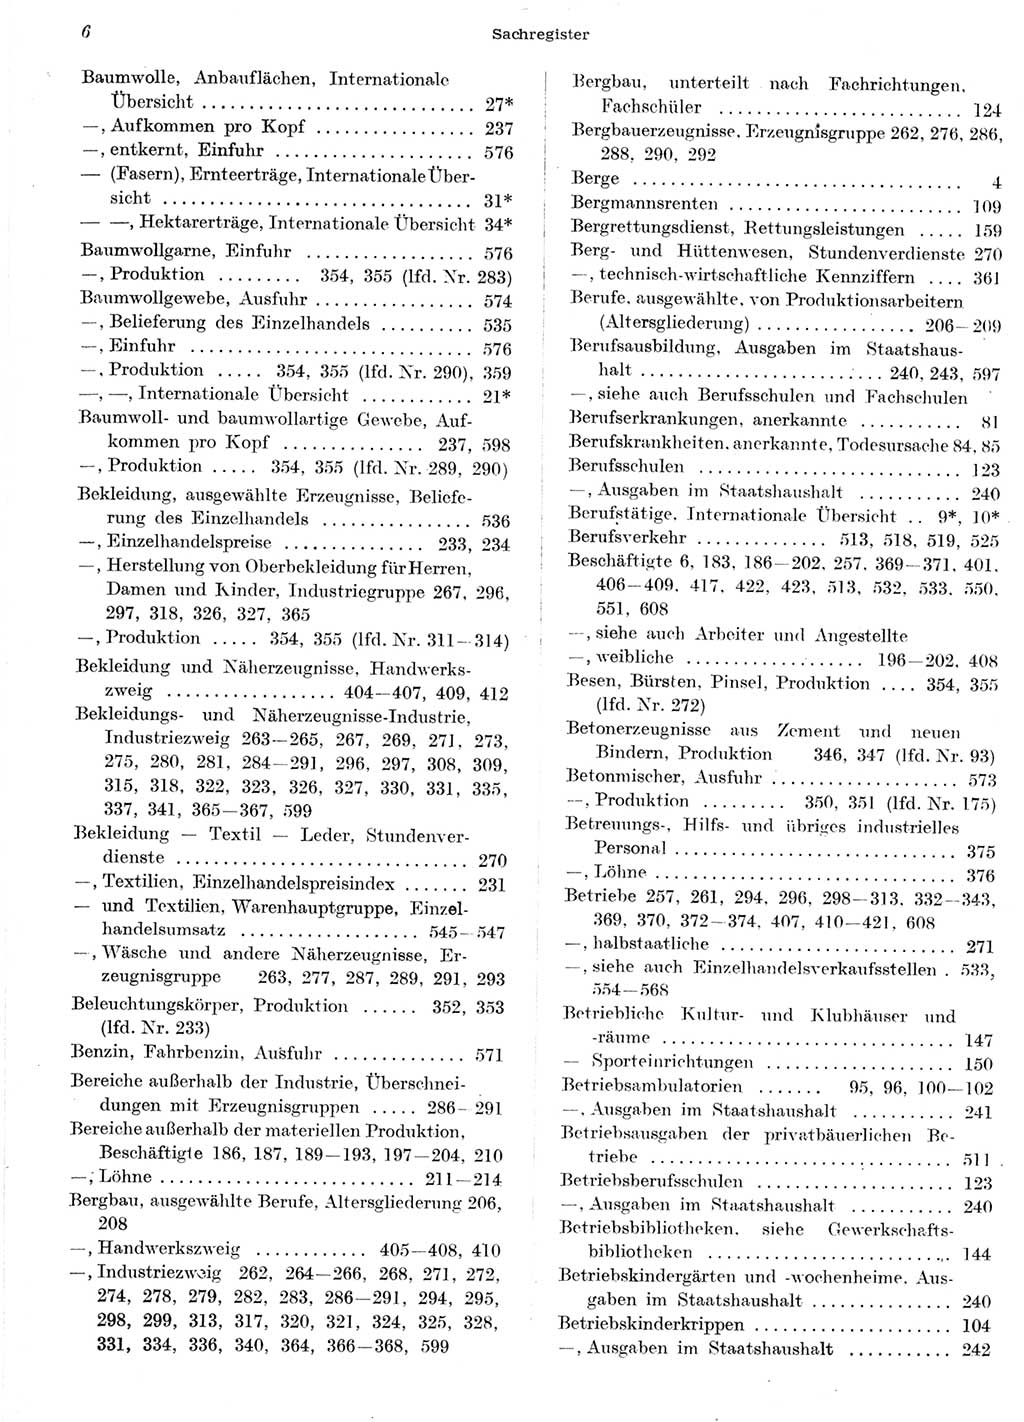 Statistisches Jahrbuch der Deutschen Demokratischen Republik (DDR) 1958, Seite 6 (Stat. Jb. DDR 1958, S. 6)